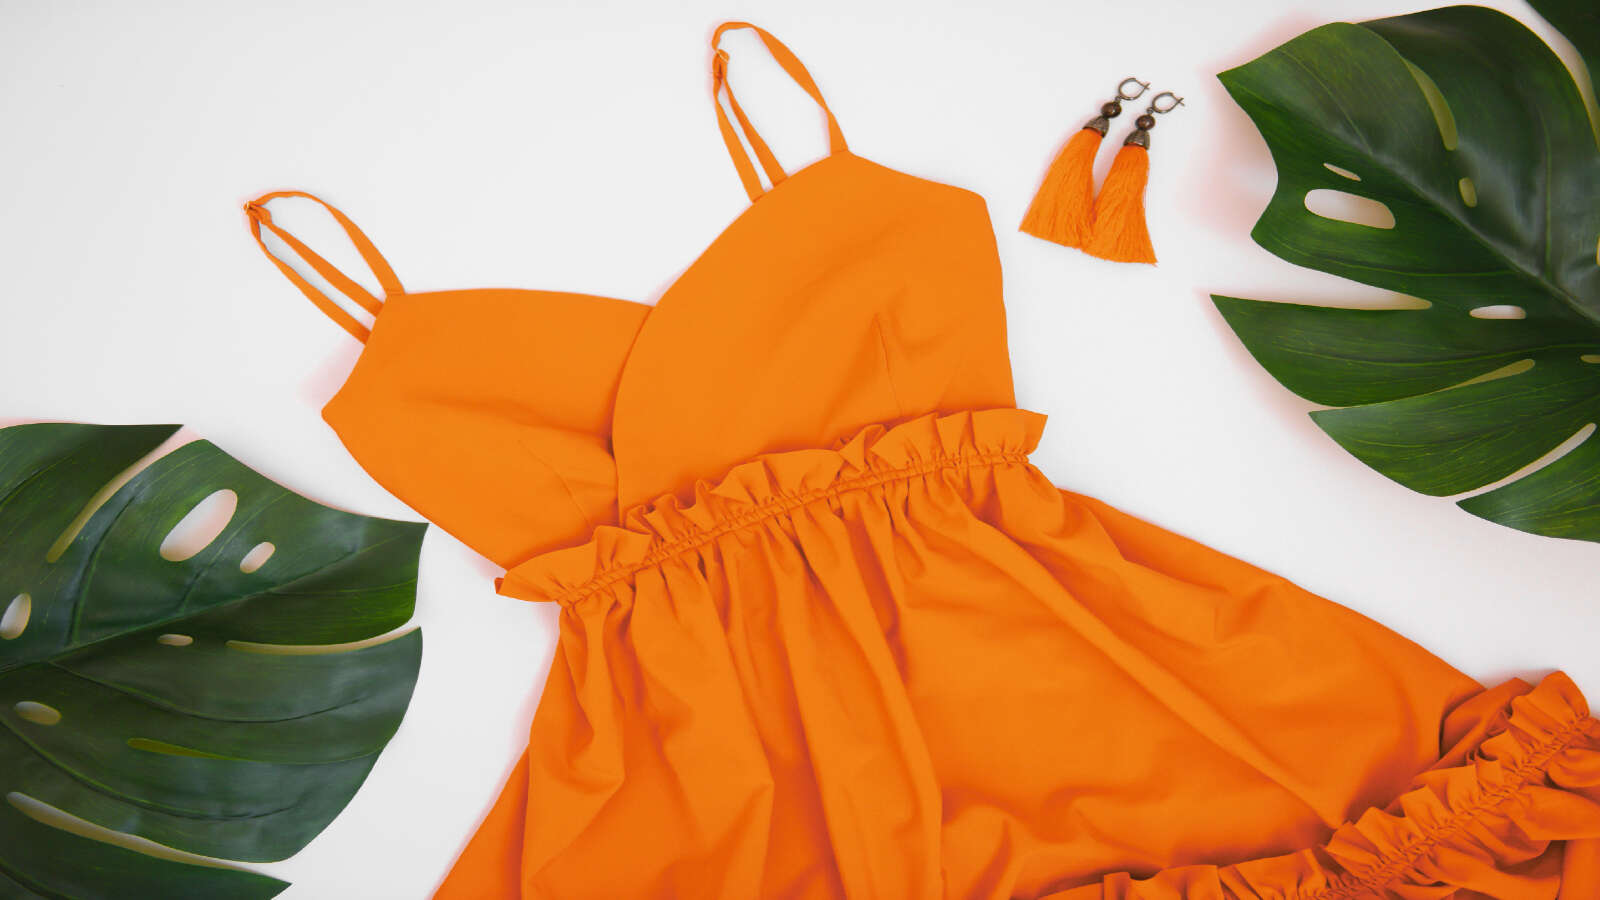 Les associations de couleurs à la mode avec de l’orange